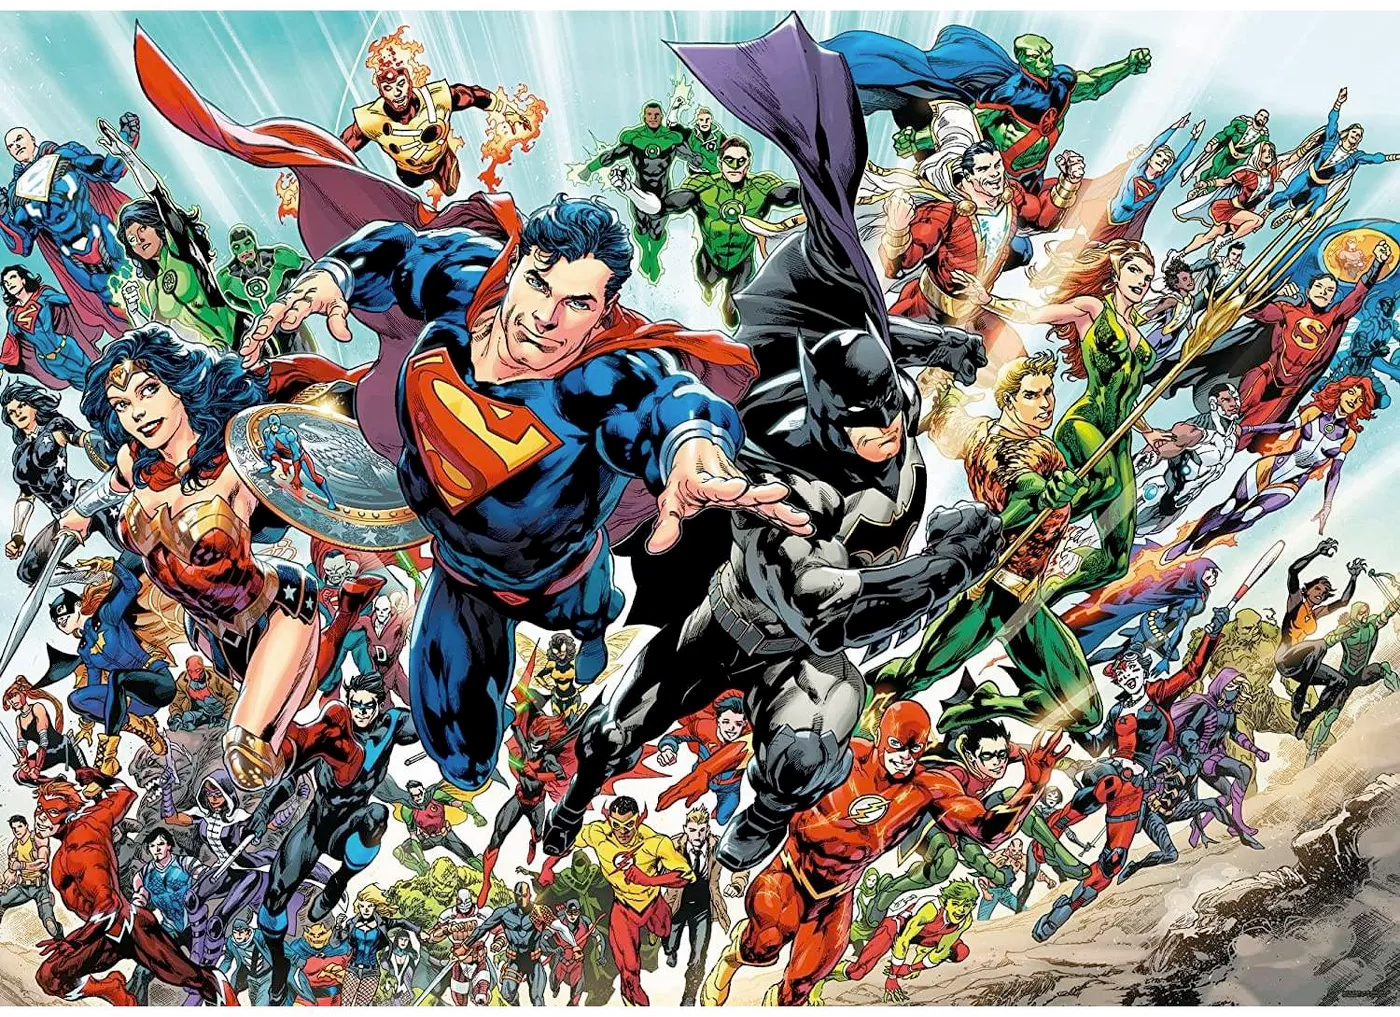 Quebra-Cabeça DC Comics Cast com 3.000 Peças e o Elenco das Histórias em Quadrinhos